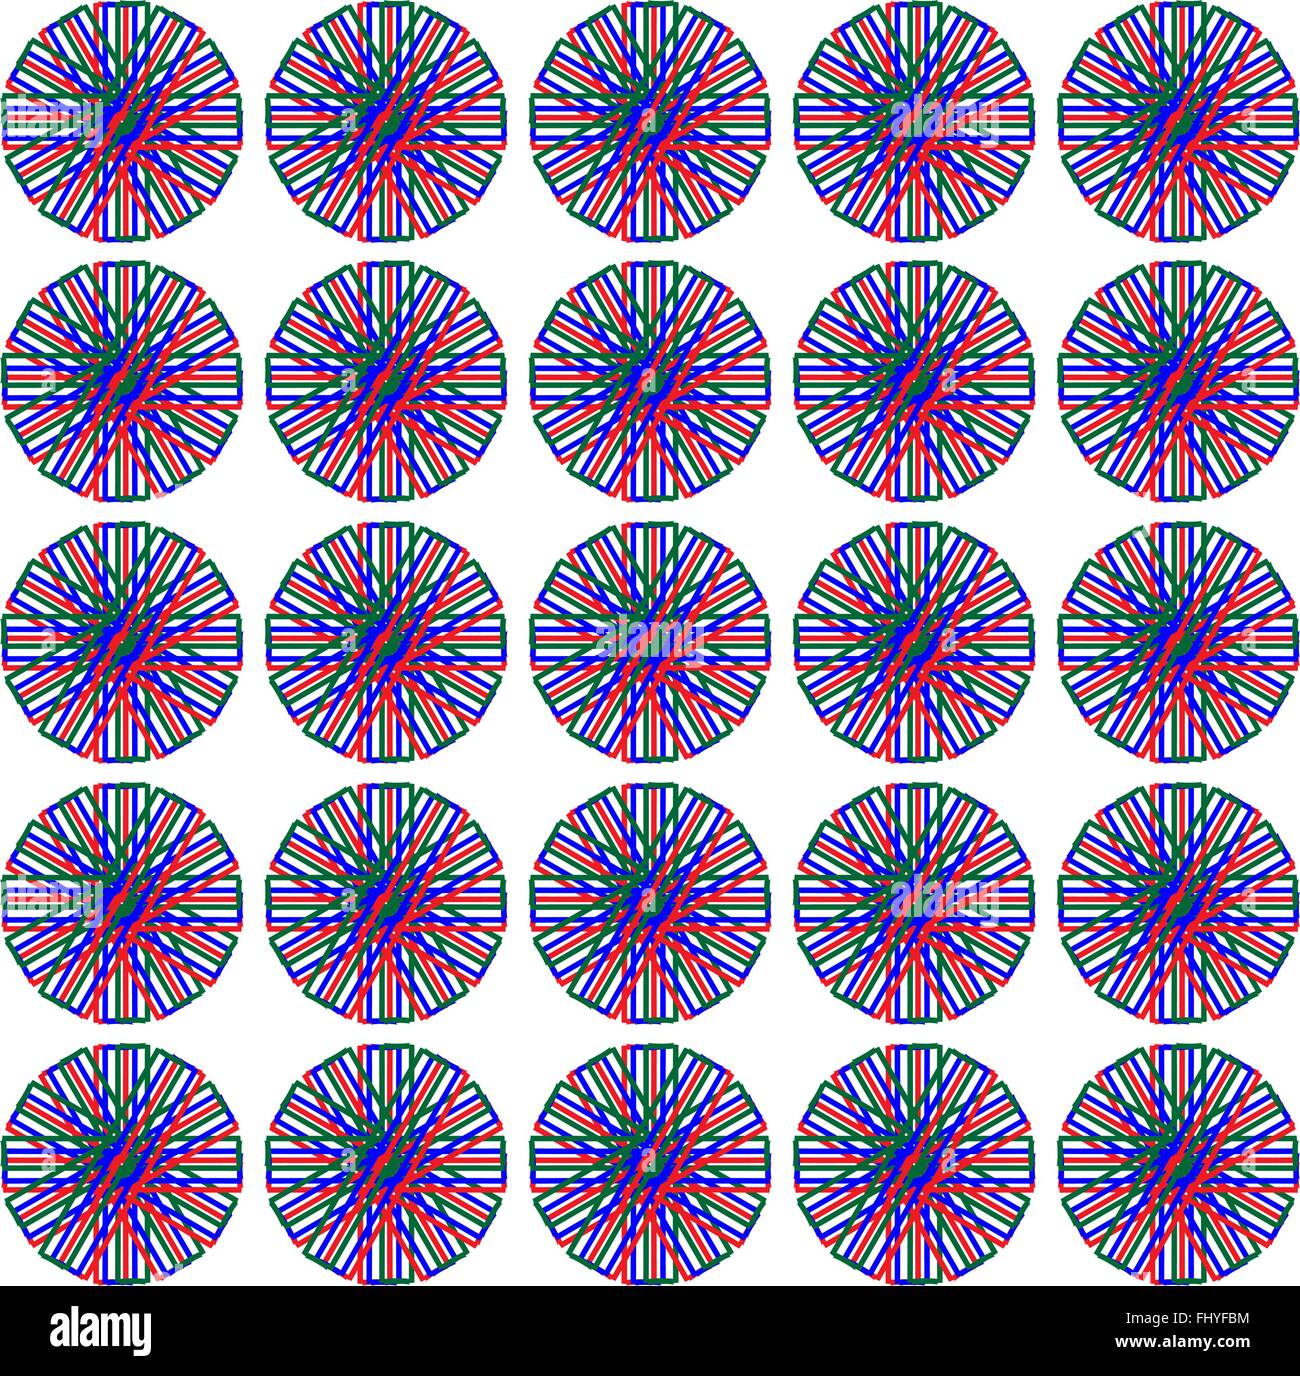 Moderne Blumen-Print für Stoff. Nahtlose Muster in verschiedenen Farben mit dominanten lila Farbe. Digitale Vektor-illustration Stock Vektor